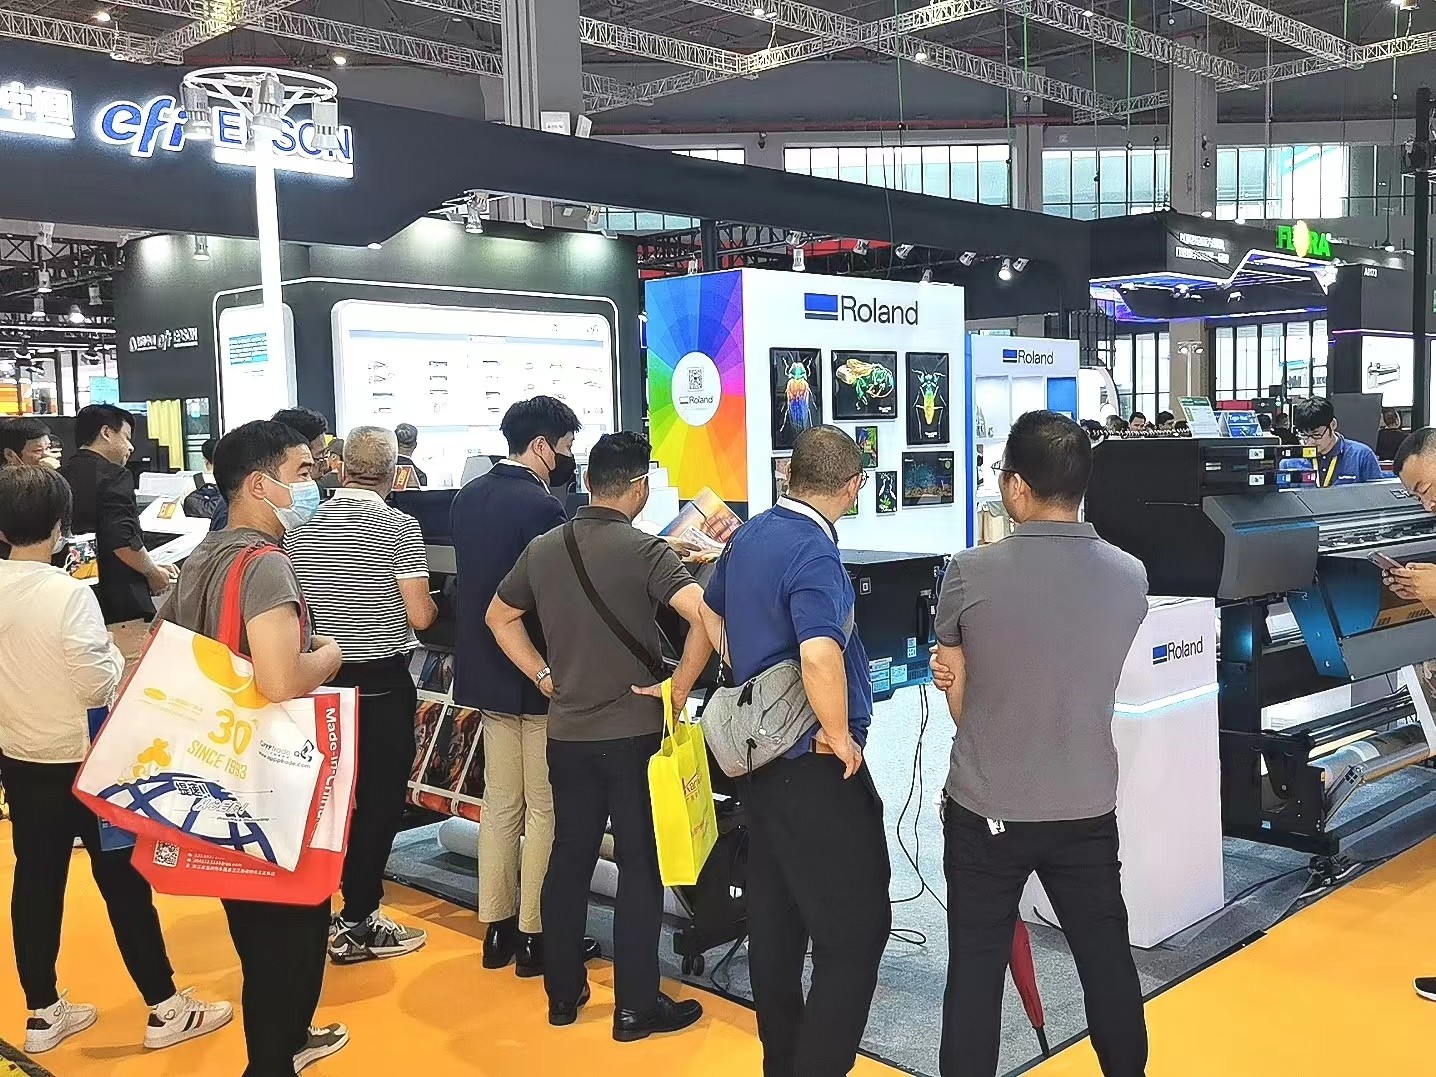 2023中国（南京）电池产业发展大会暨展览会